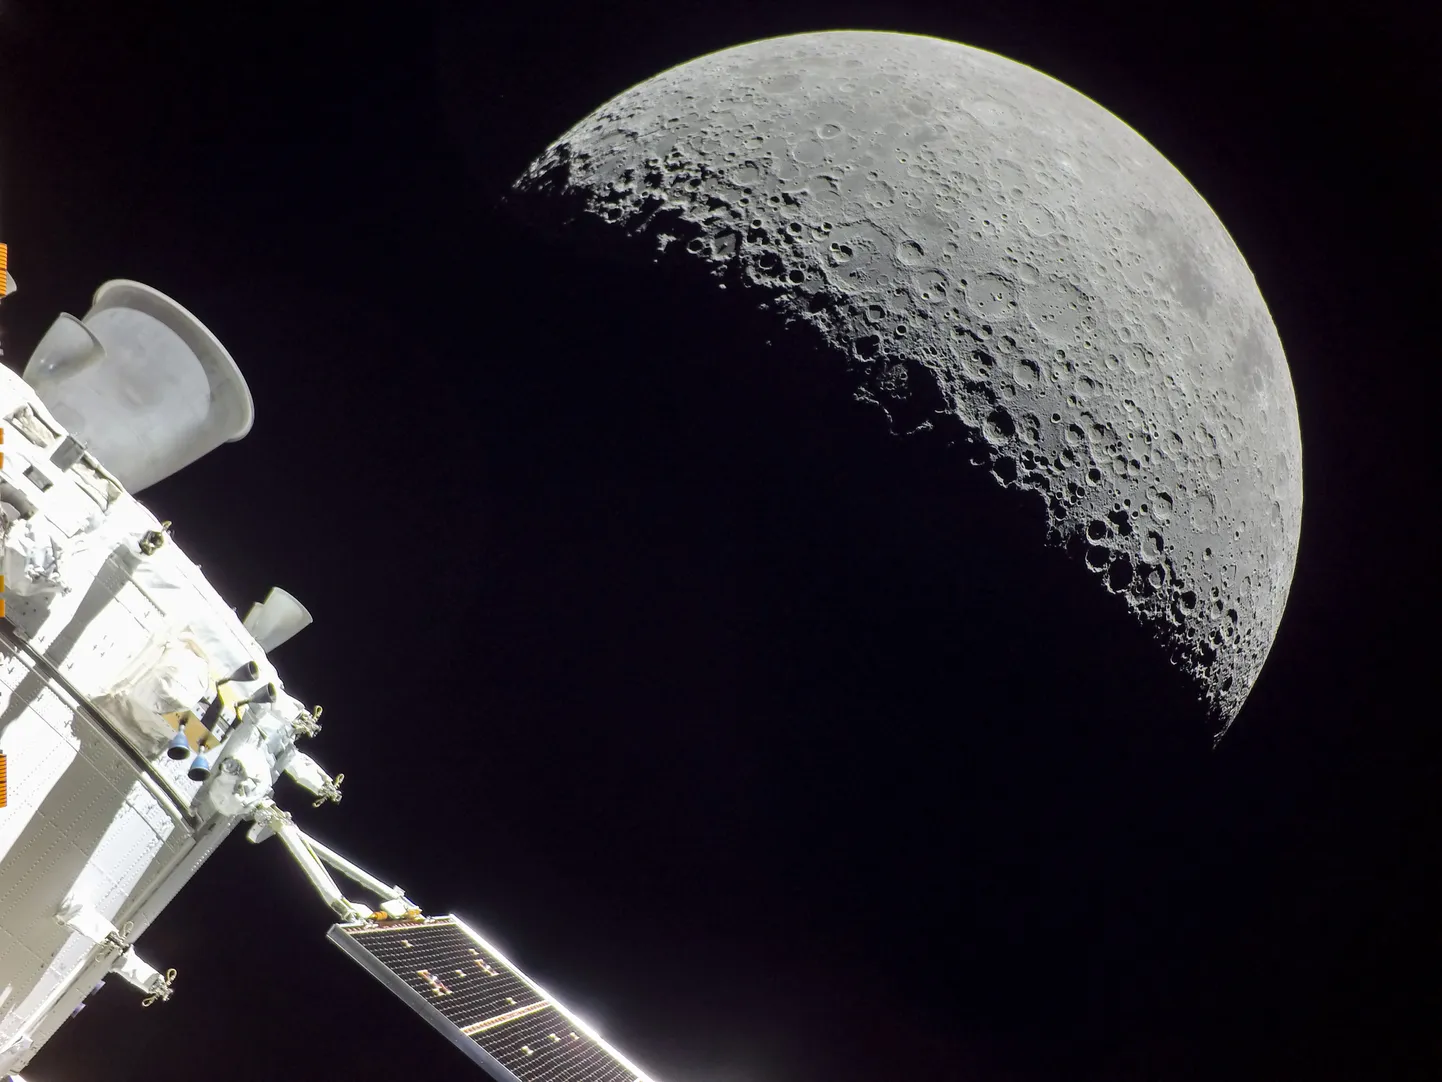 Lunar Codexi esimene lend toimus eelmisel sügisel NASA Orioni missiooni raames. Sellel missioonil saadi Kuust ka hämmastavaid fotosid